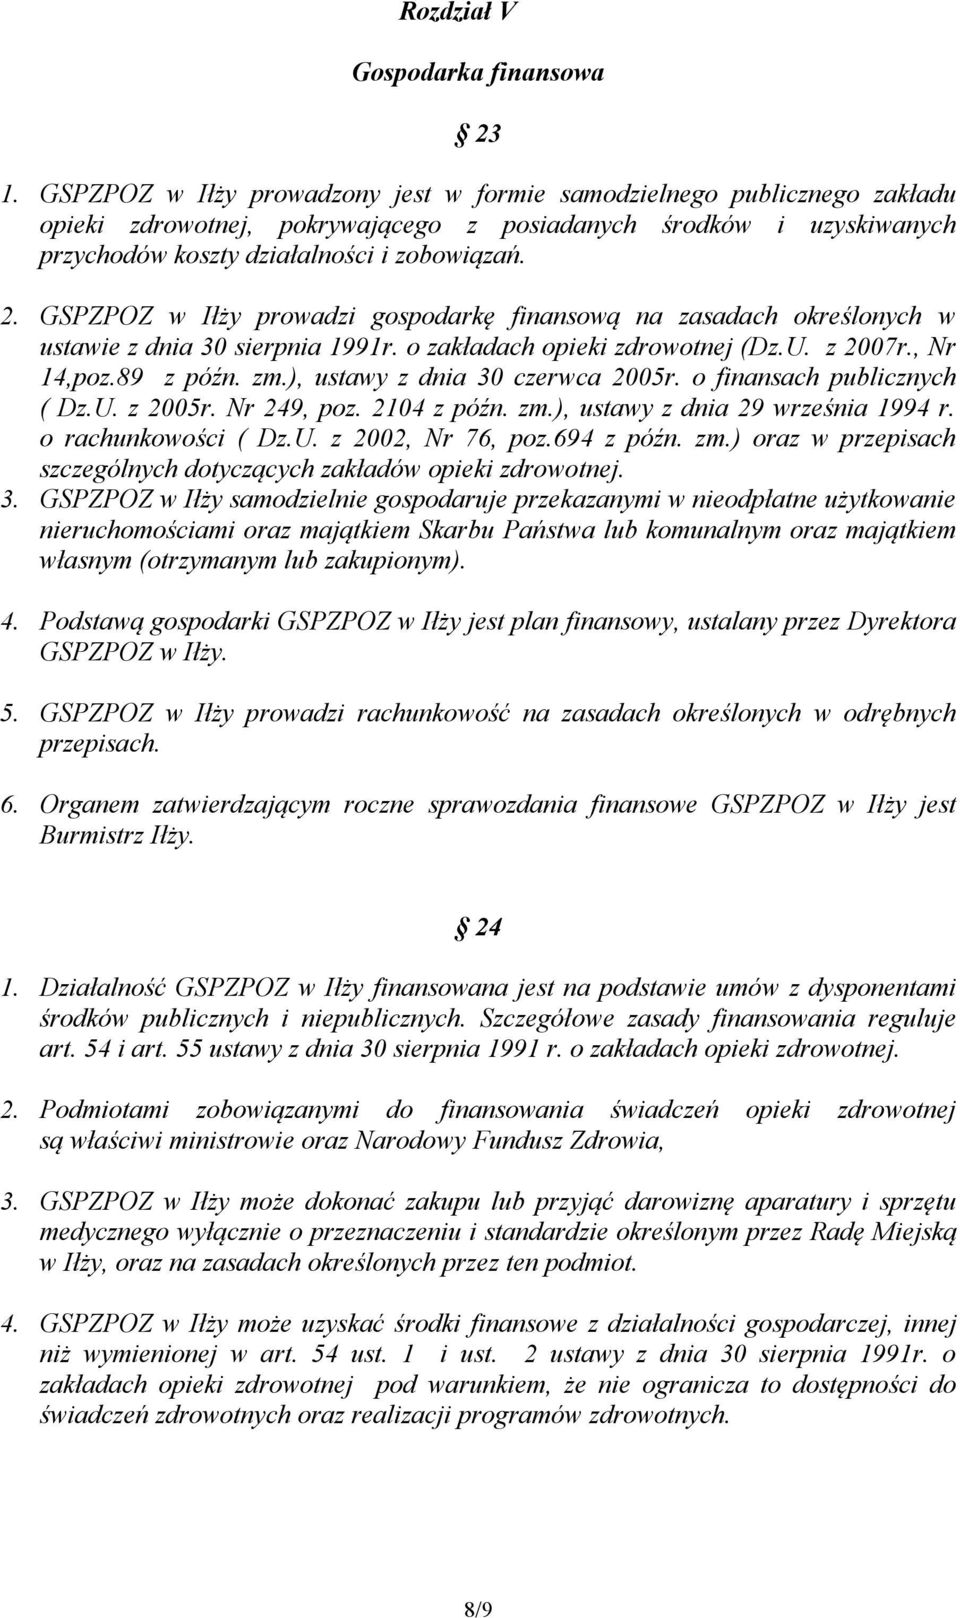 GSPZPOZ w Iłży prowadzi gospodarkę finansową na zasadach określonych w ustawie z dnia 30 sierpnia 1991r. o zakładach opieki zdrowotnej (Dz.U. z 2007r., Nr 14,poz.89 z późn. zm.